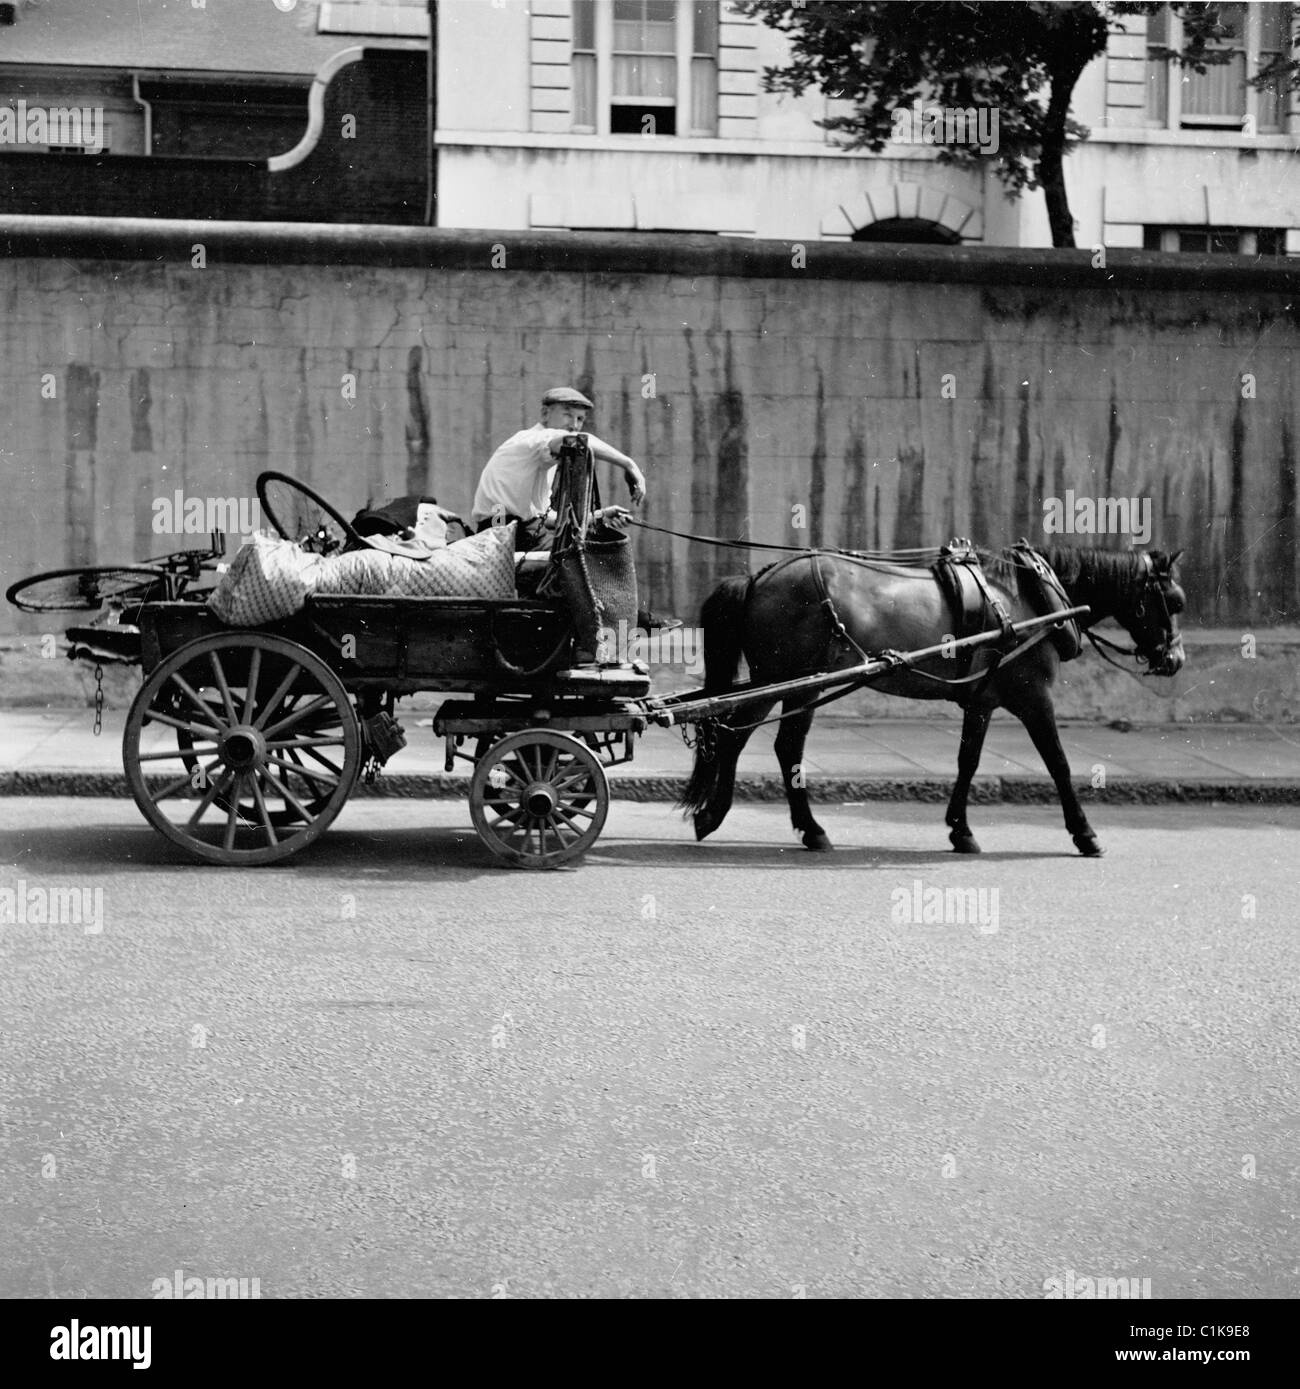 anni '50, un uomo straccio e osso sul suo cavallo e carretto, era un tradesmen di strada che raccoglieva oggetti domestici indesiderati o rottami di metallo come le vecchie biciclette. Foto Stock